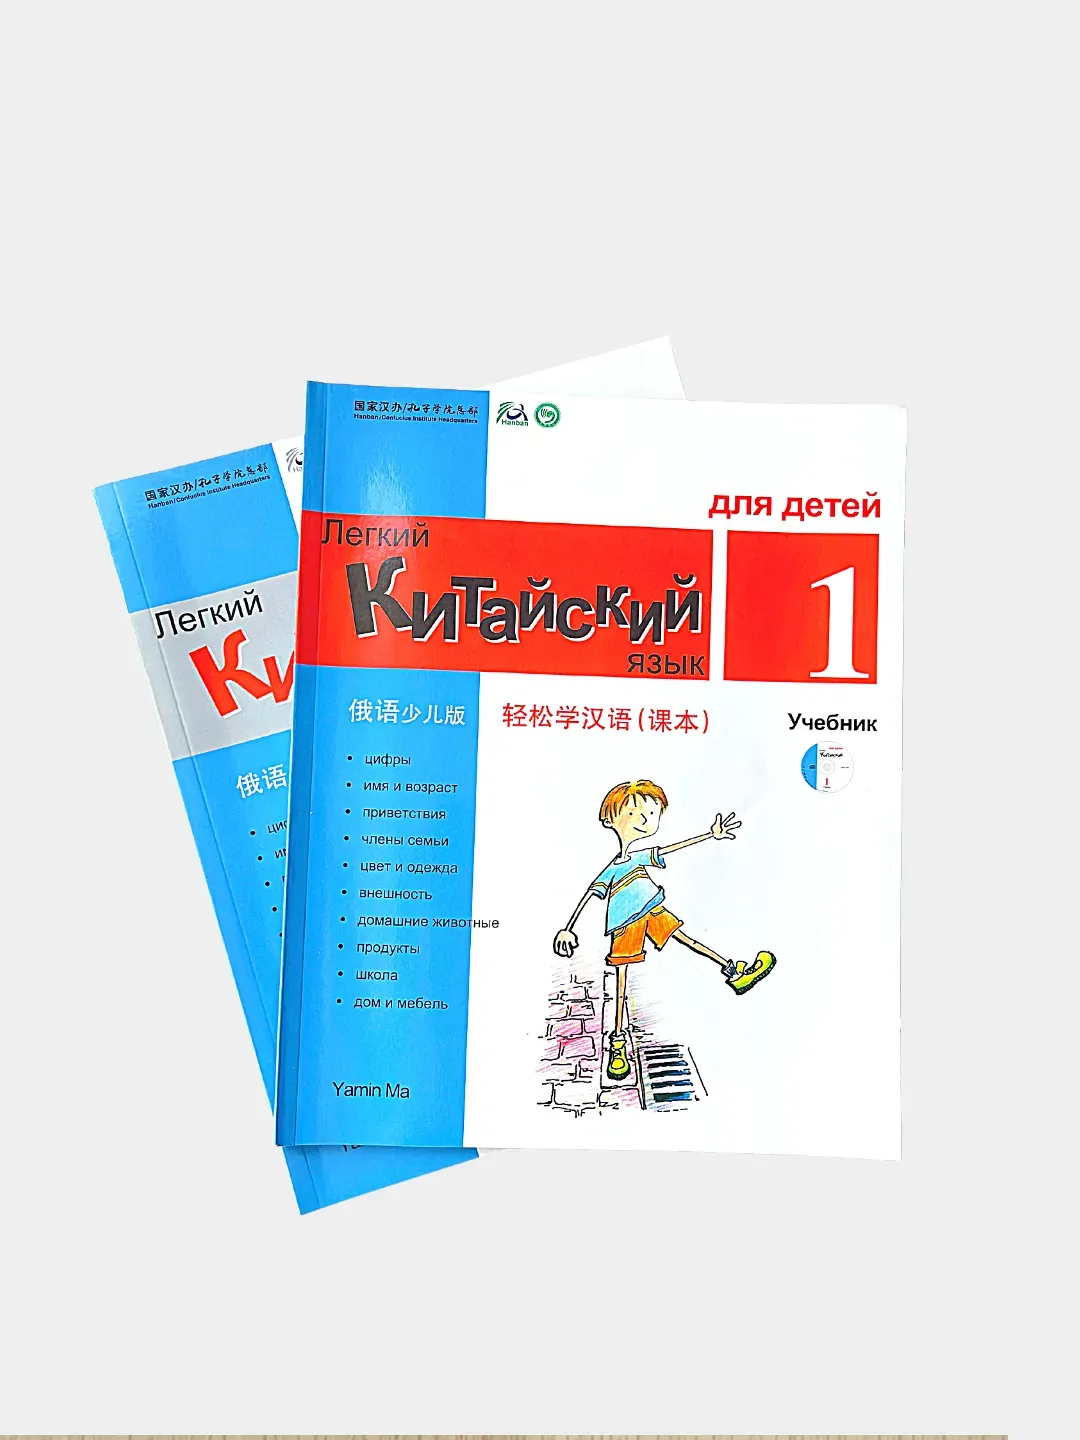 Легкий китайский учебник. Легкий китайский язык для детей учебник. Легкий китайский учебник 1.